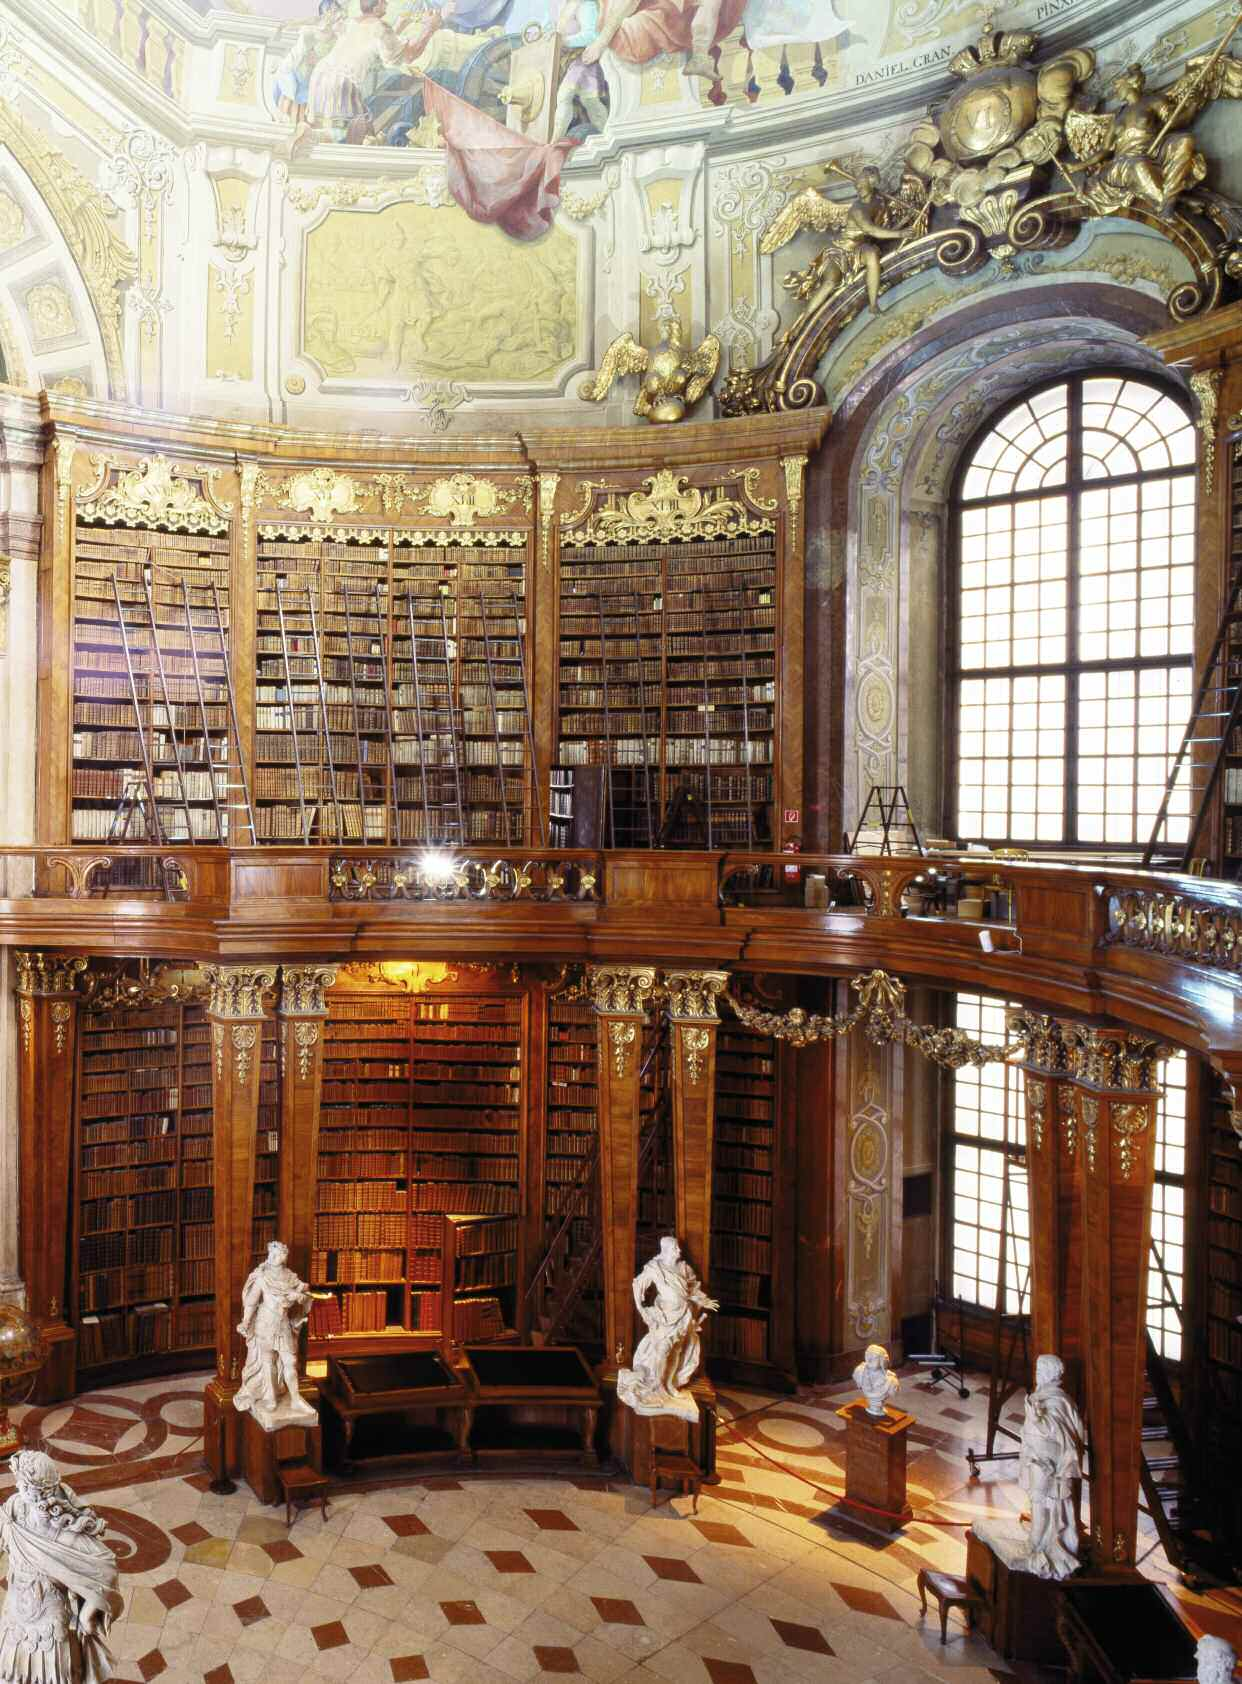 Die Österreichische Nationalbibliothek zählt zu den wertvollsten Bibliotheken der Welt. Jahrhundertelang diente sie dem Habsburger Kaiserreich als zentrales Wissenszentrum.